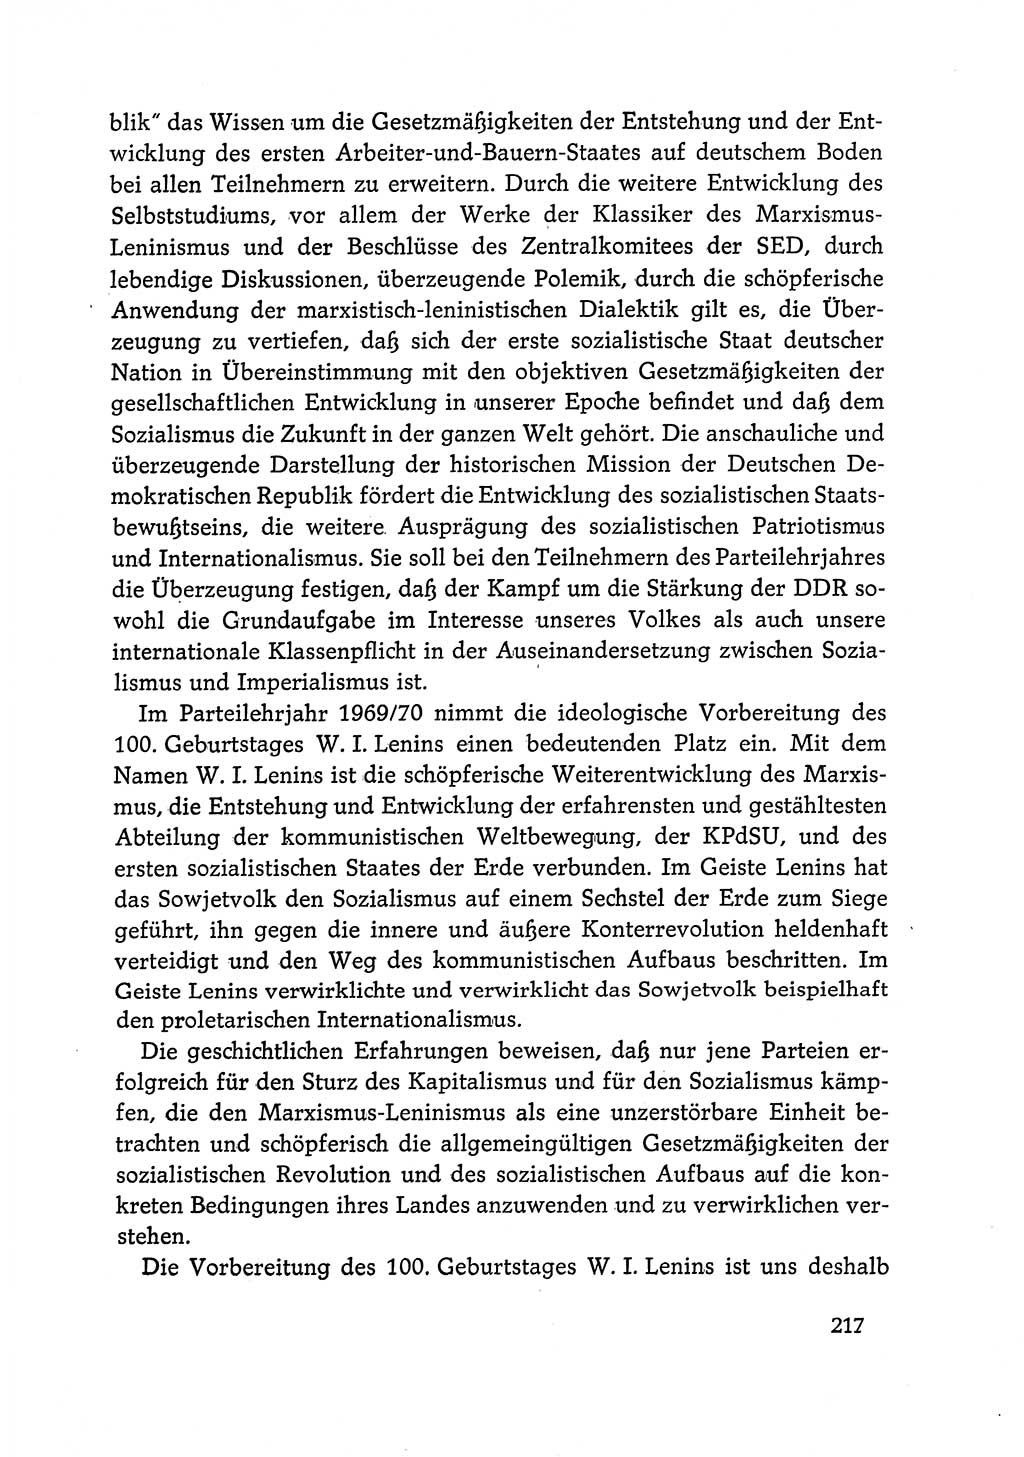 Dokumente der Sozialistischen Einheitspartei Deutschlands (SED) [Deutsche Demokratische Republik (DDR)] 1968-1969, Seite 217 (Dok. SED DDR 1968-1969, S. 217)